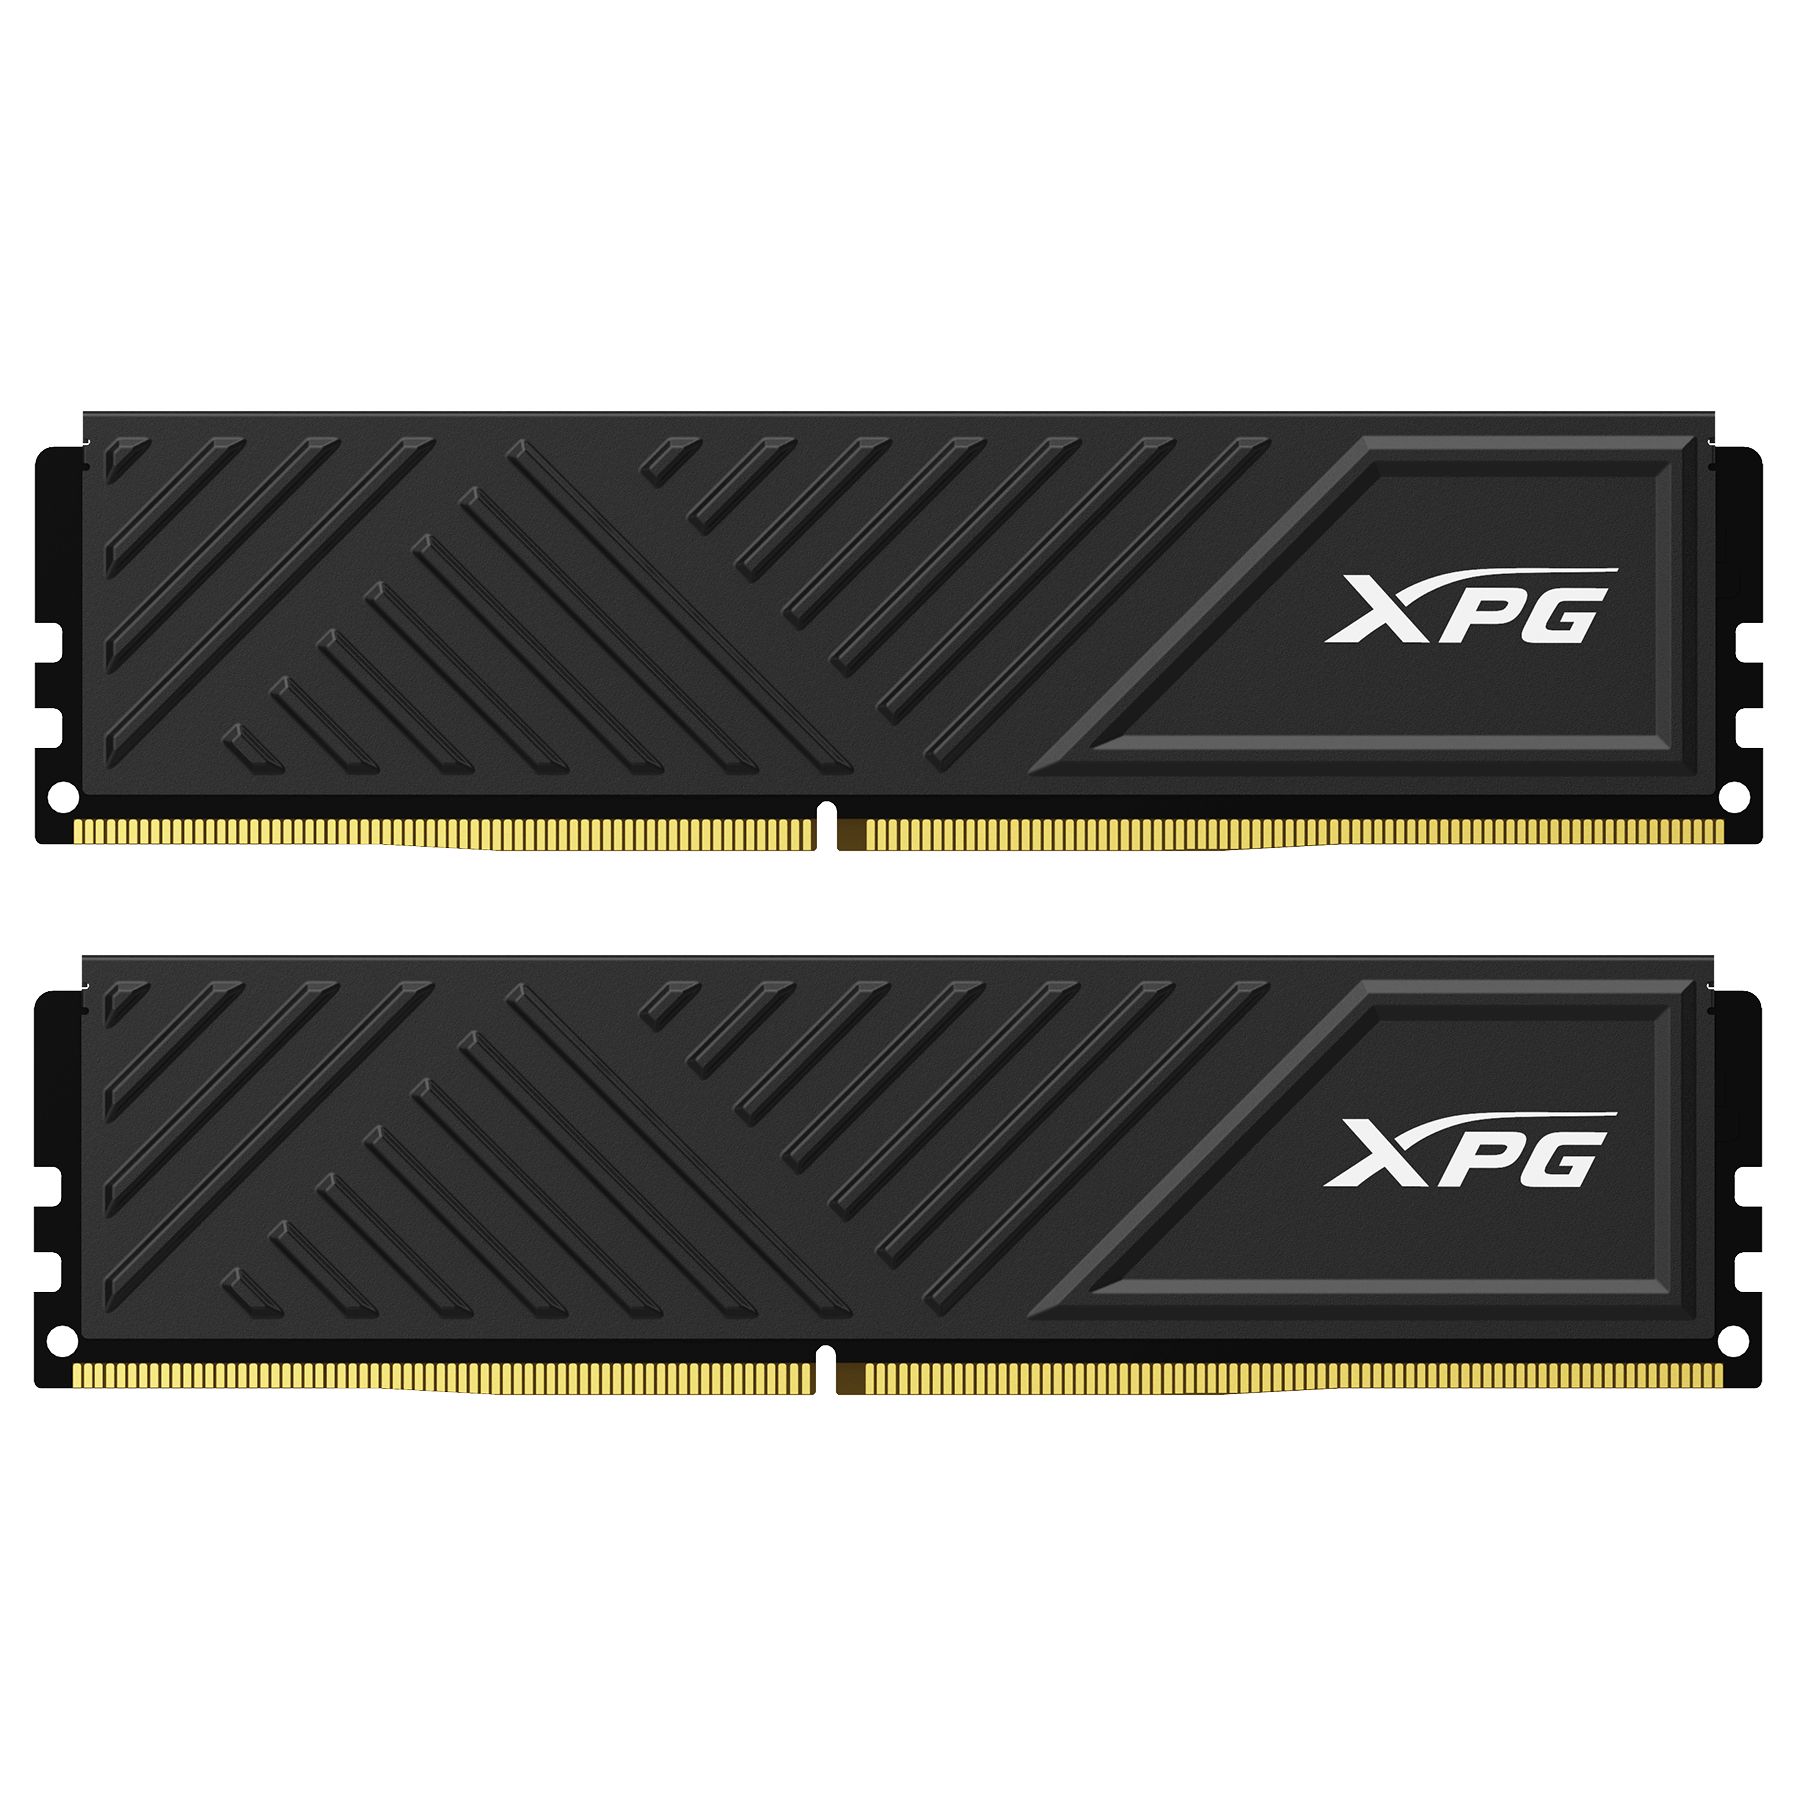 ADATA XPG GAMMIX DDR4 8GB (2X4GB) CL 16 3200 MHZ_1